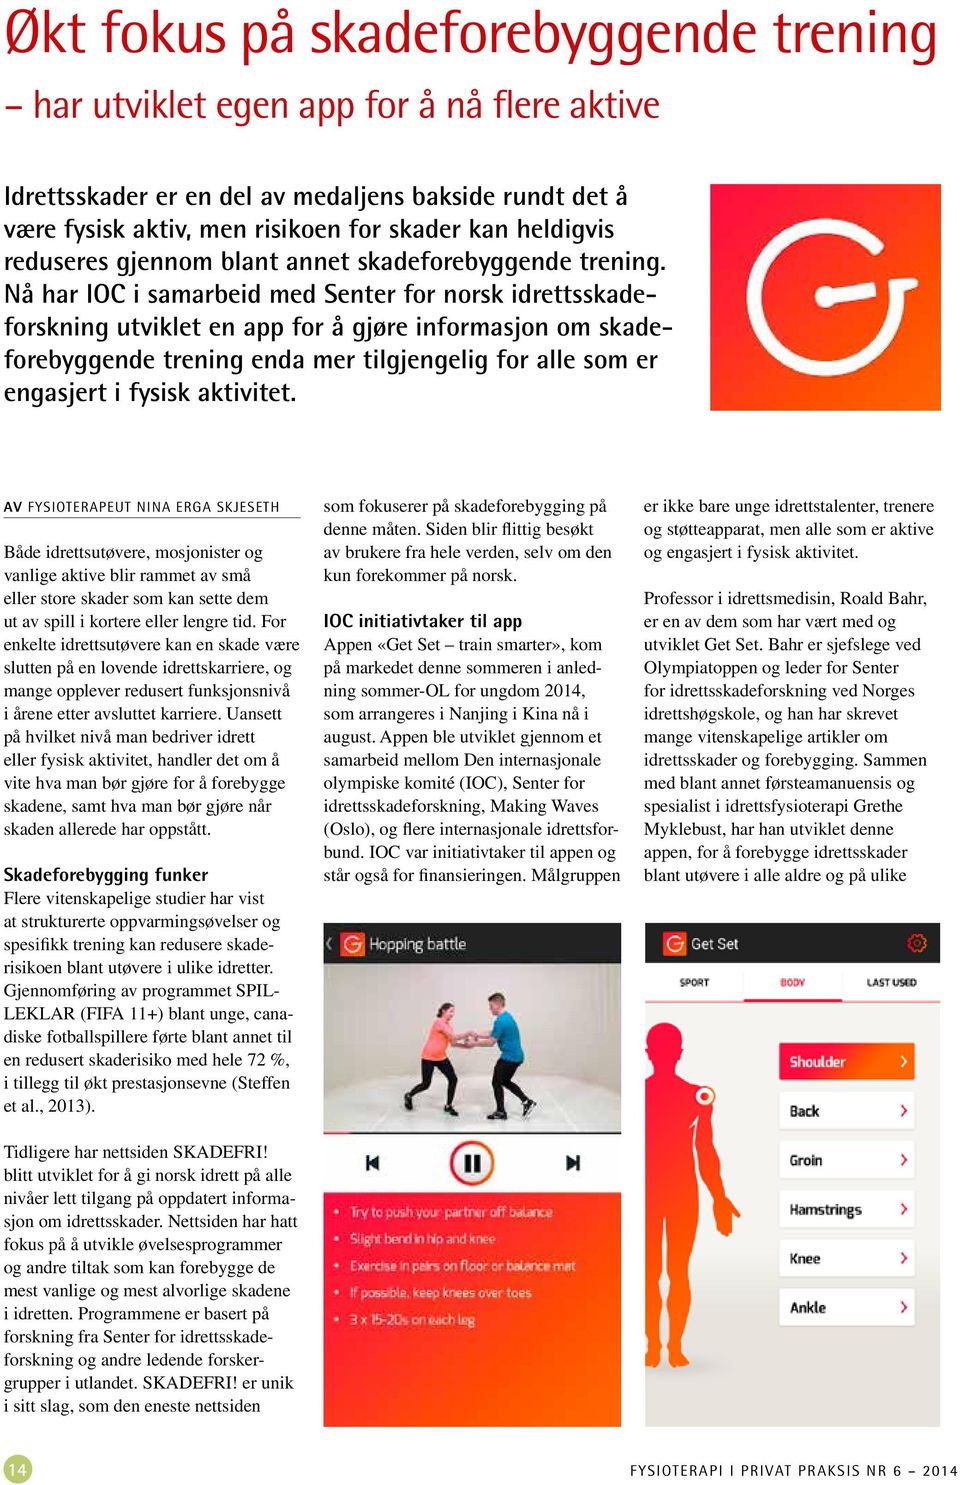 Nå har IOC i samarbeid med Senter for norsk idrettsskadeforskning utviklet en app for å gjøre informasjon om skadeforebyggende trening enda mer tilgjengelig for alle som er engasjert i fysisk